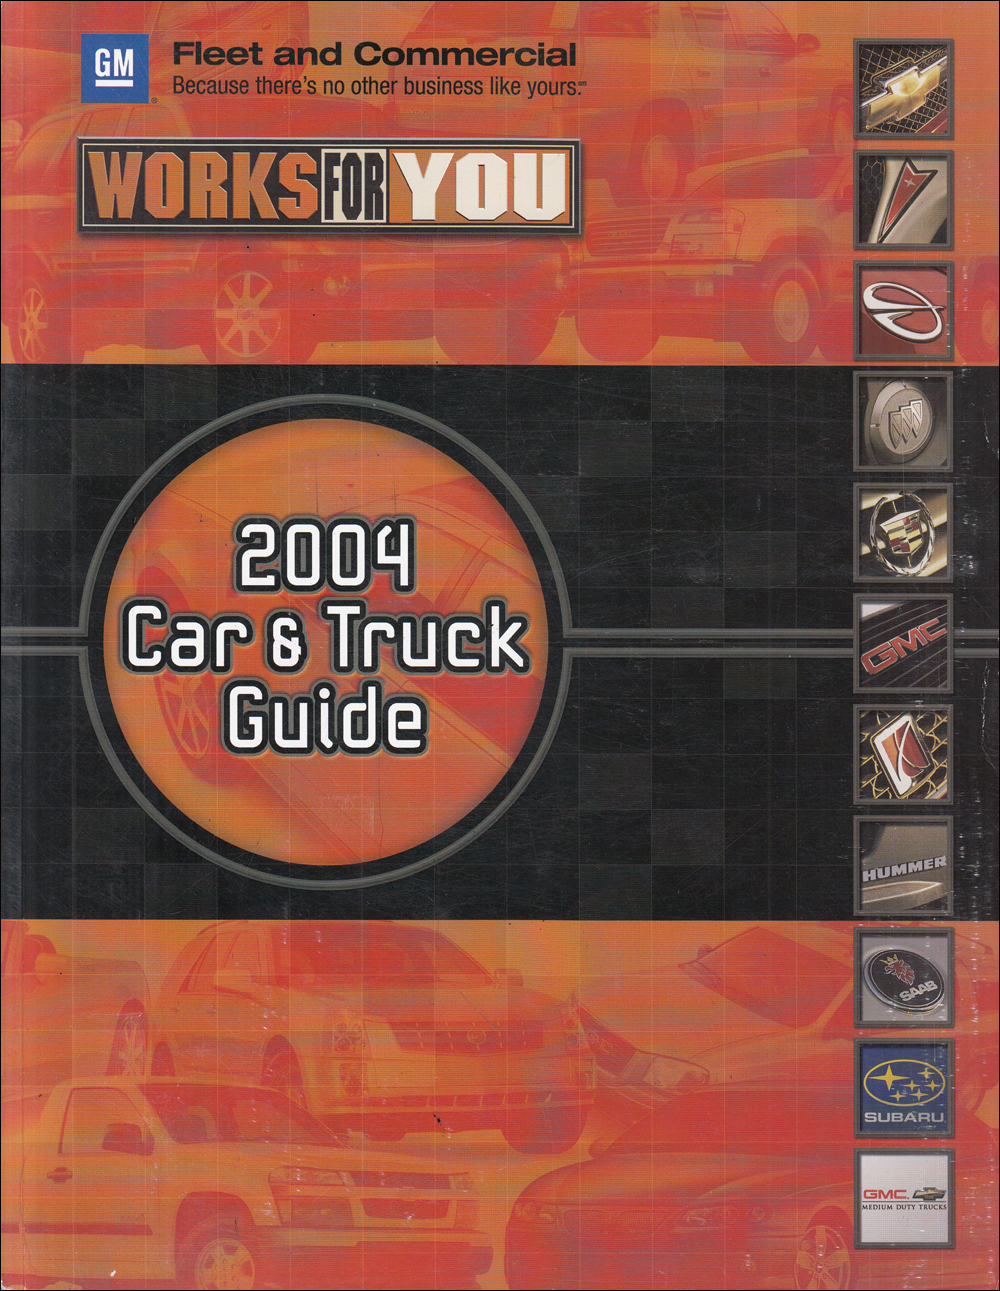 2004 GM Fleet Buyer's Guide Dealer Album Original